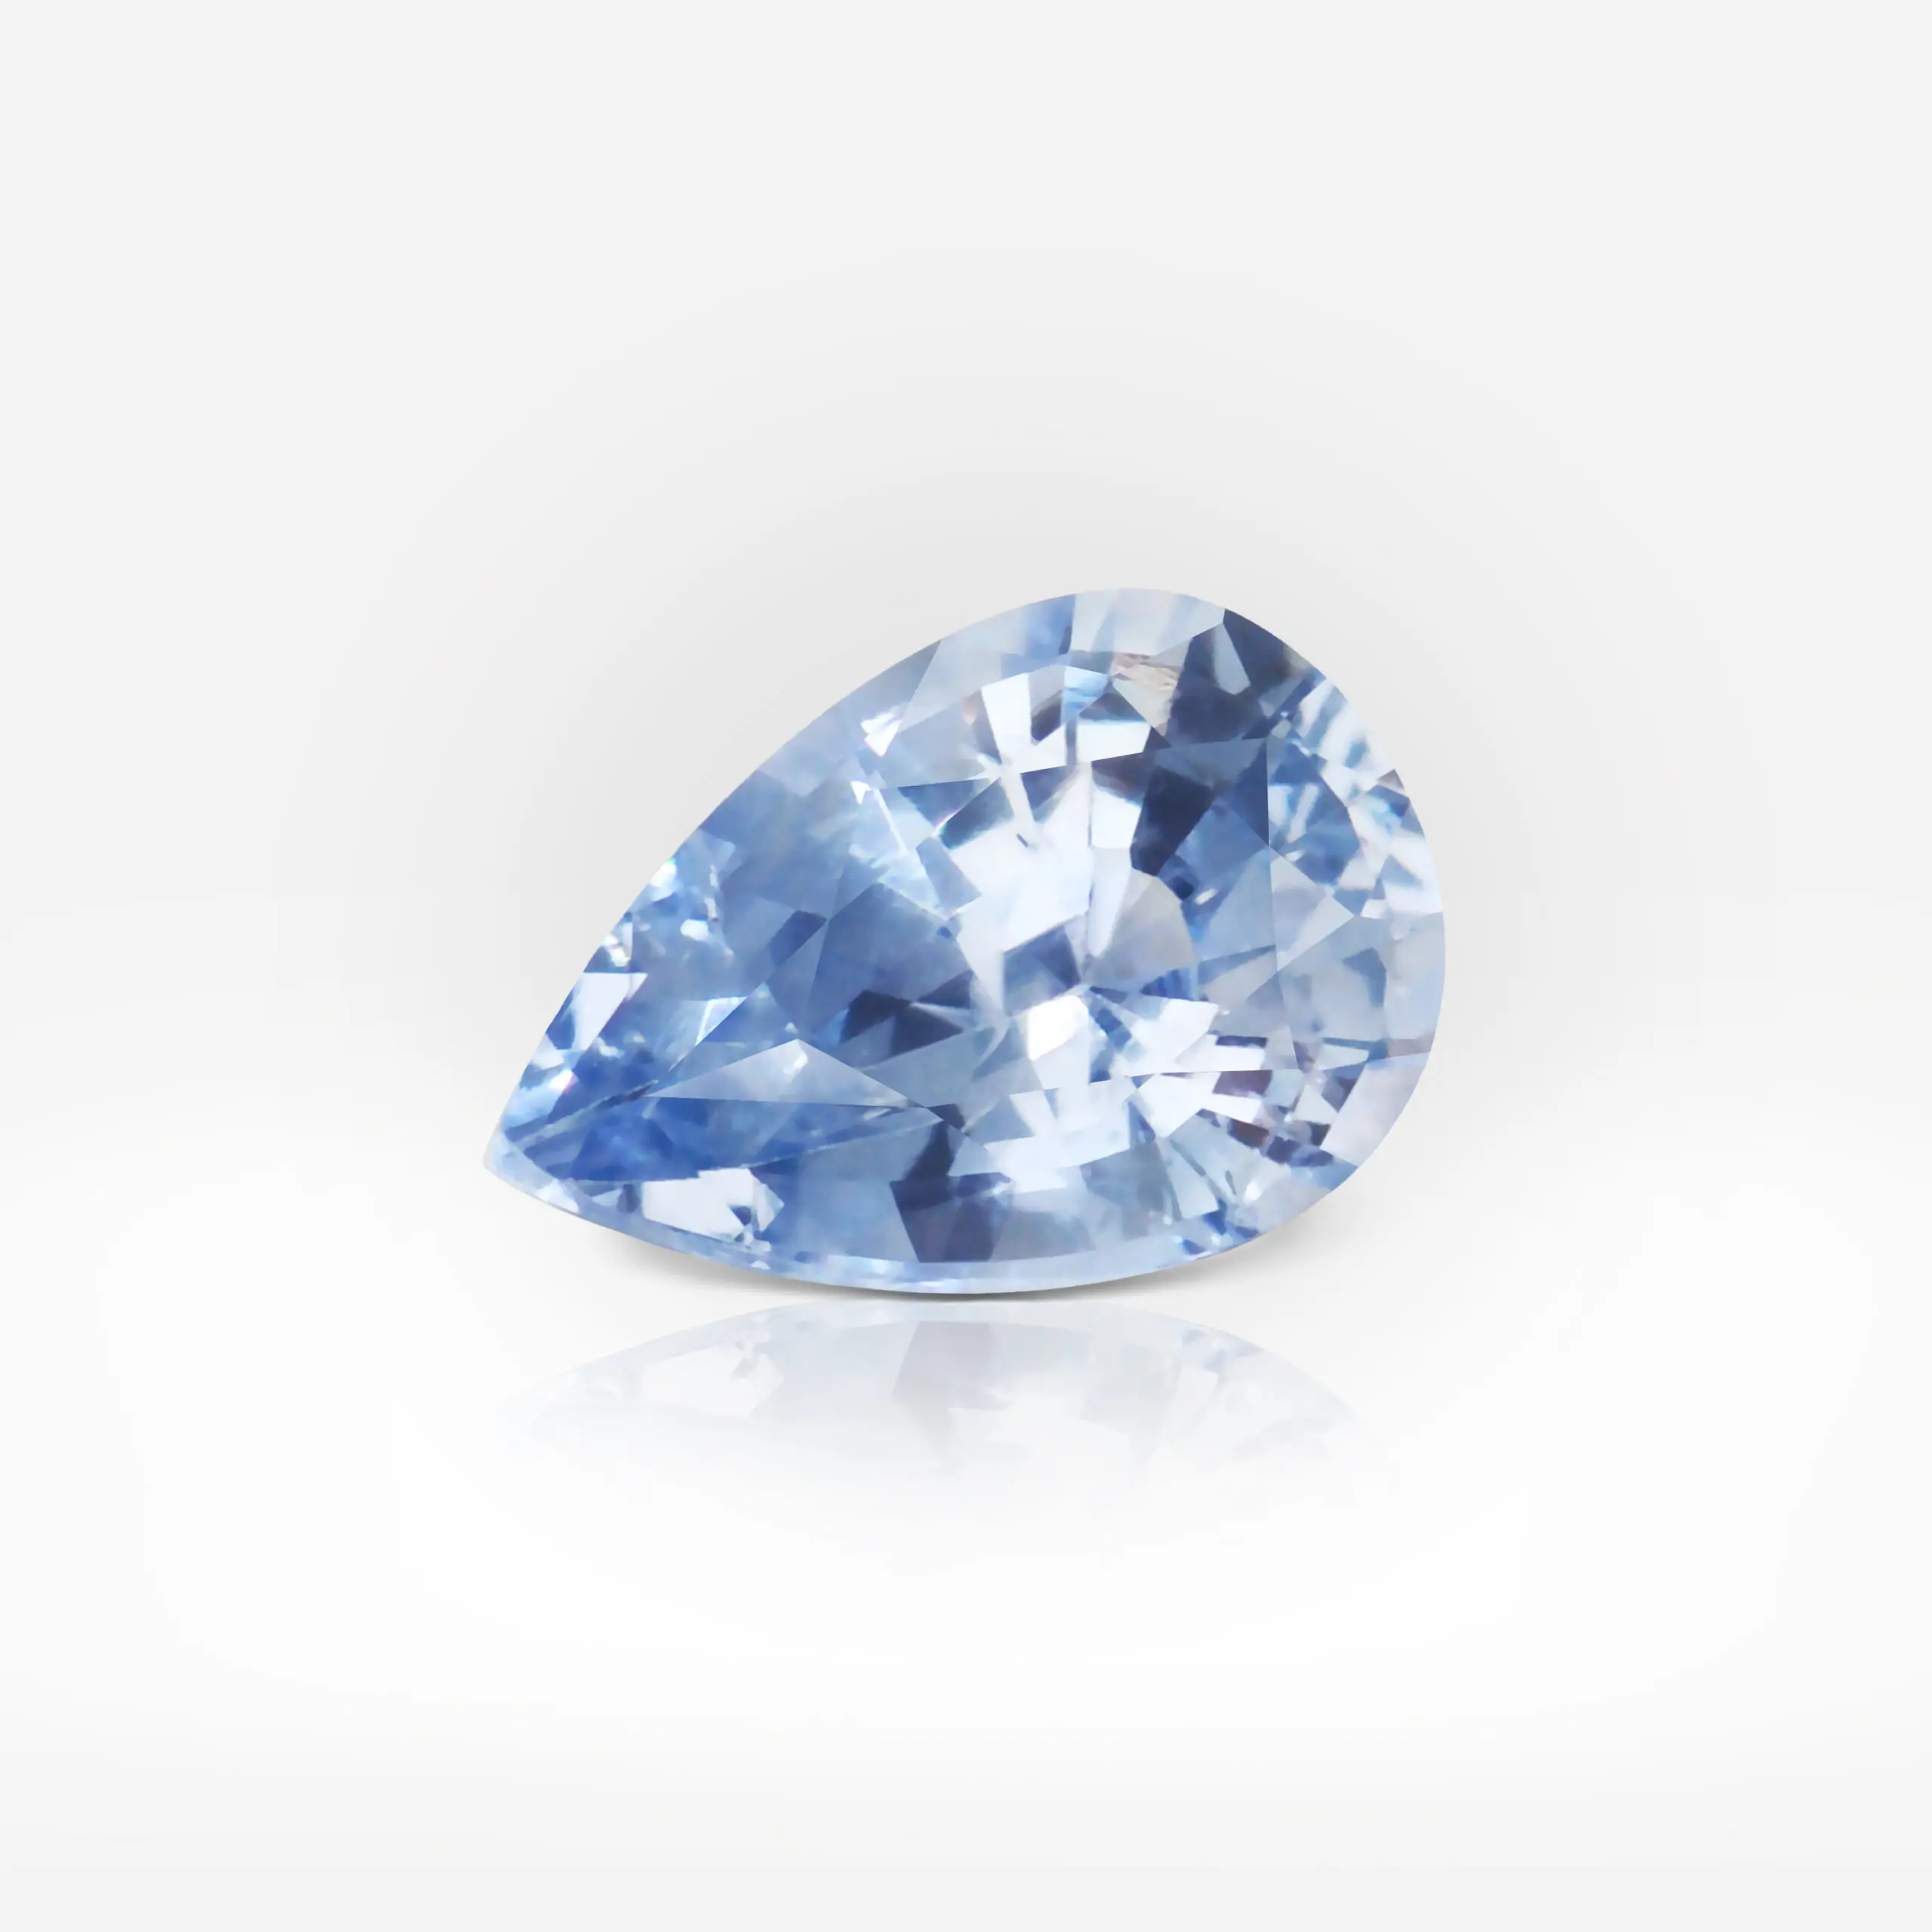 1.52 carat Pear Shape Light Blue Sapphire ALGT - picture 1